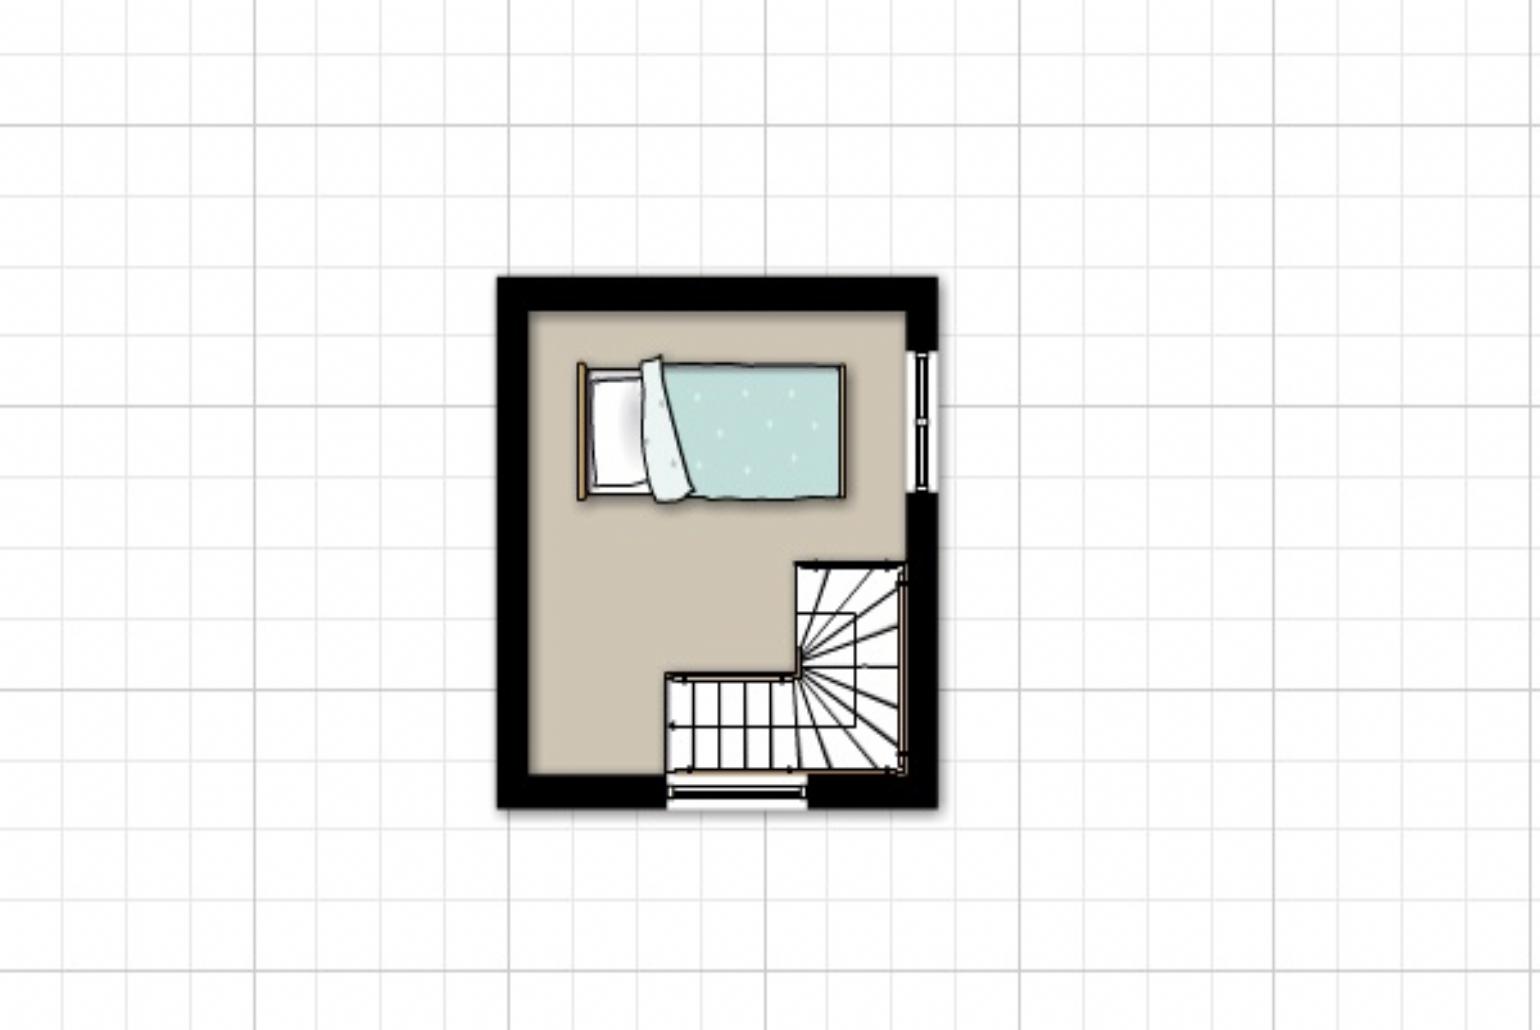 Floor Plan: Second Floor